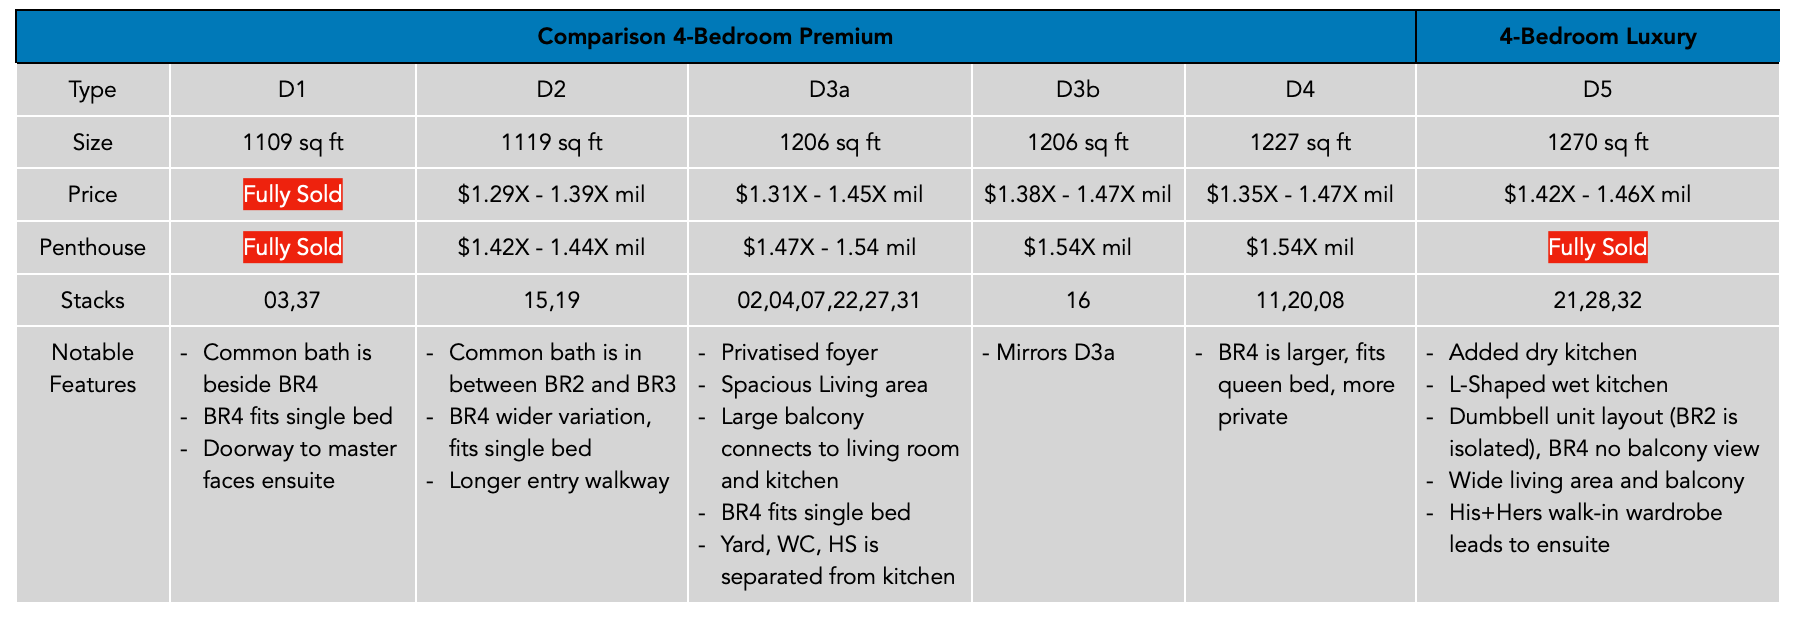 Parc Central 4-Bedroom Premium Comparison PropertyLimBrothers.png